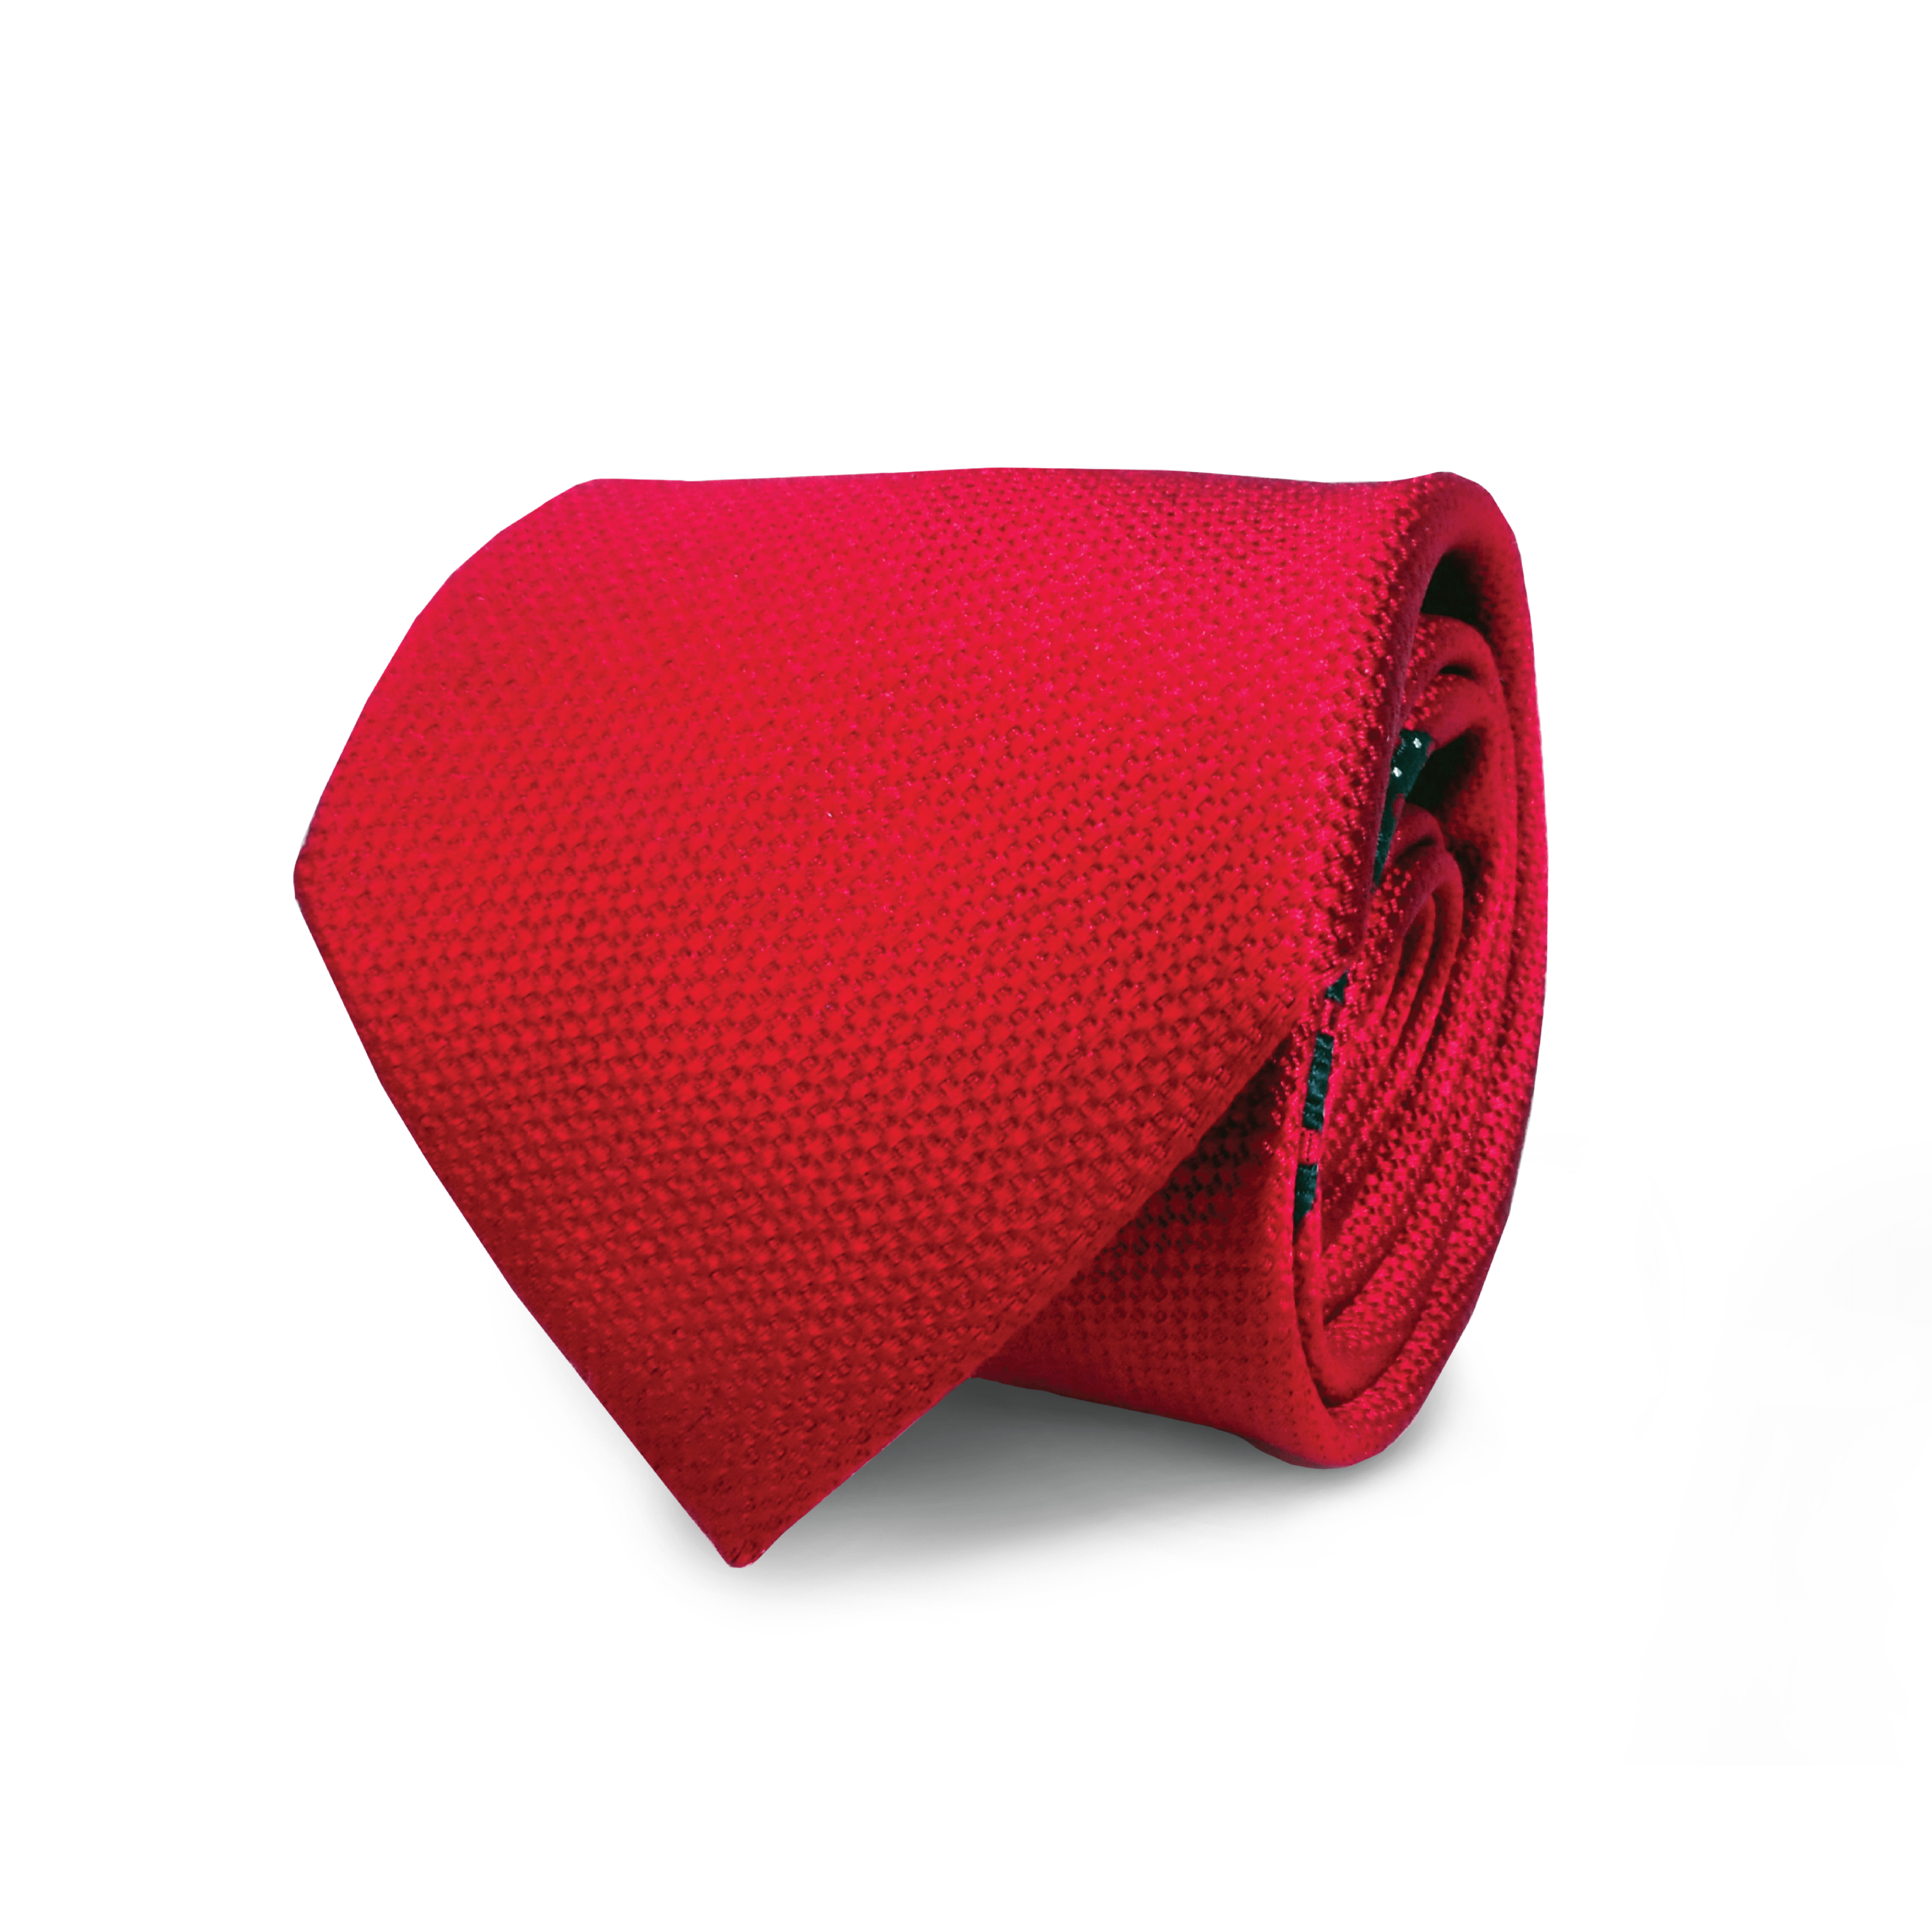 Front View of Red Silk Tie - St Valentine's